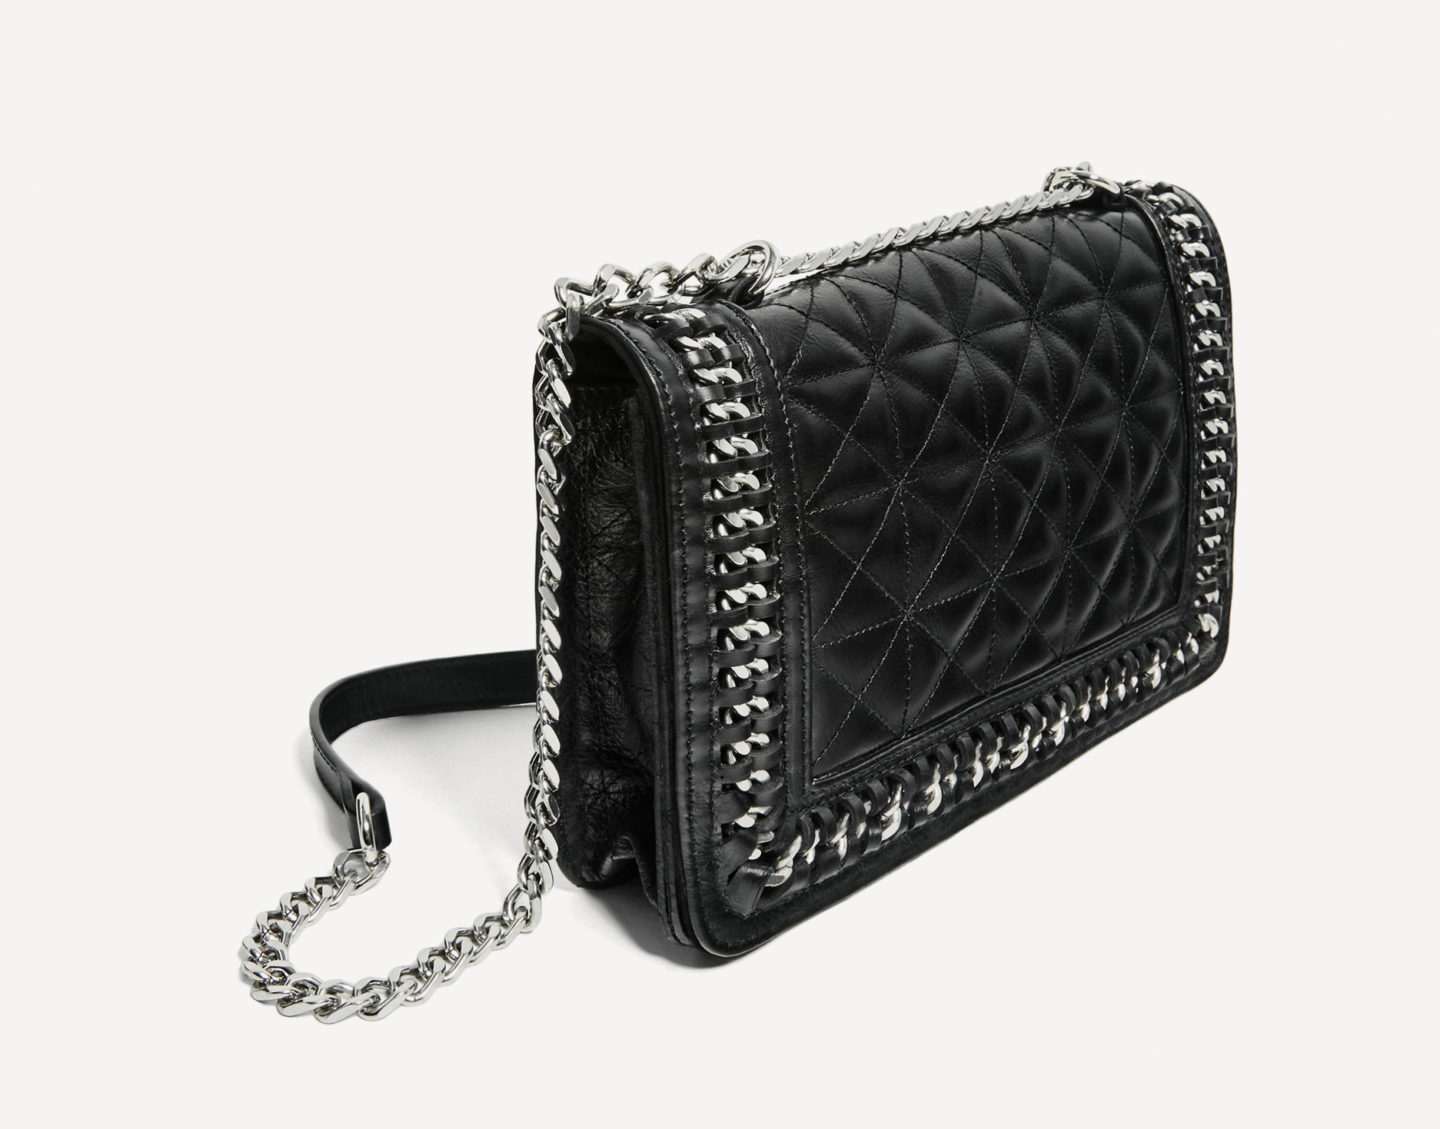 Onvervangbaar cascade Staat Chanel-geïnspireerde tassen: budget friendly dupes voor de Chanel Boy bag -  Convey Beauty